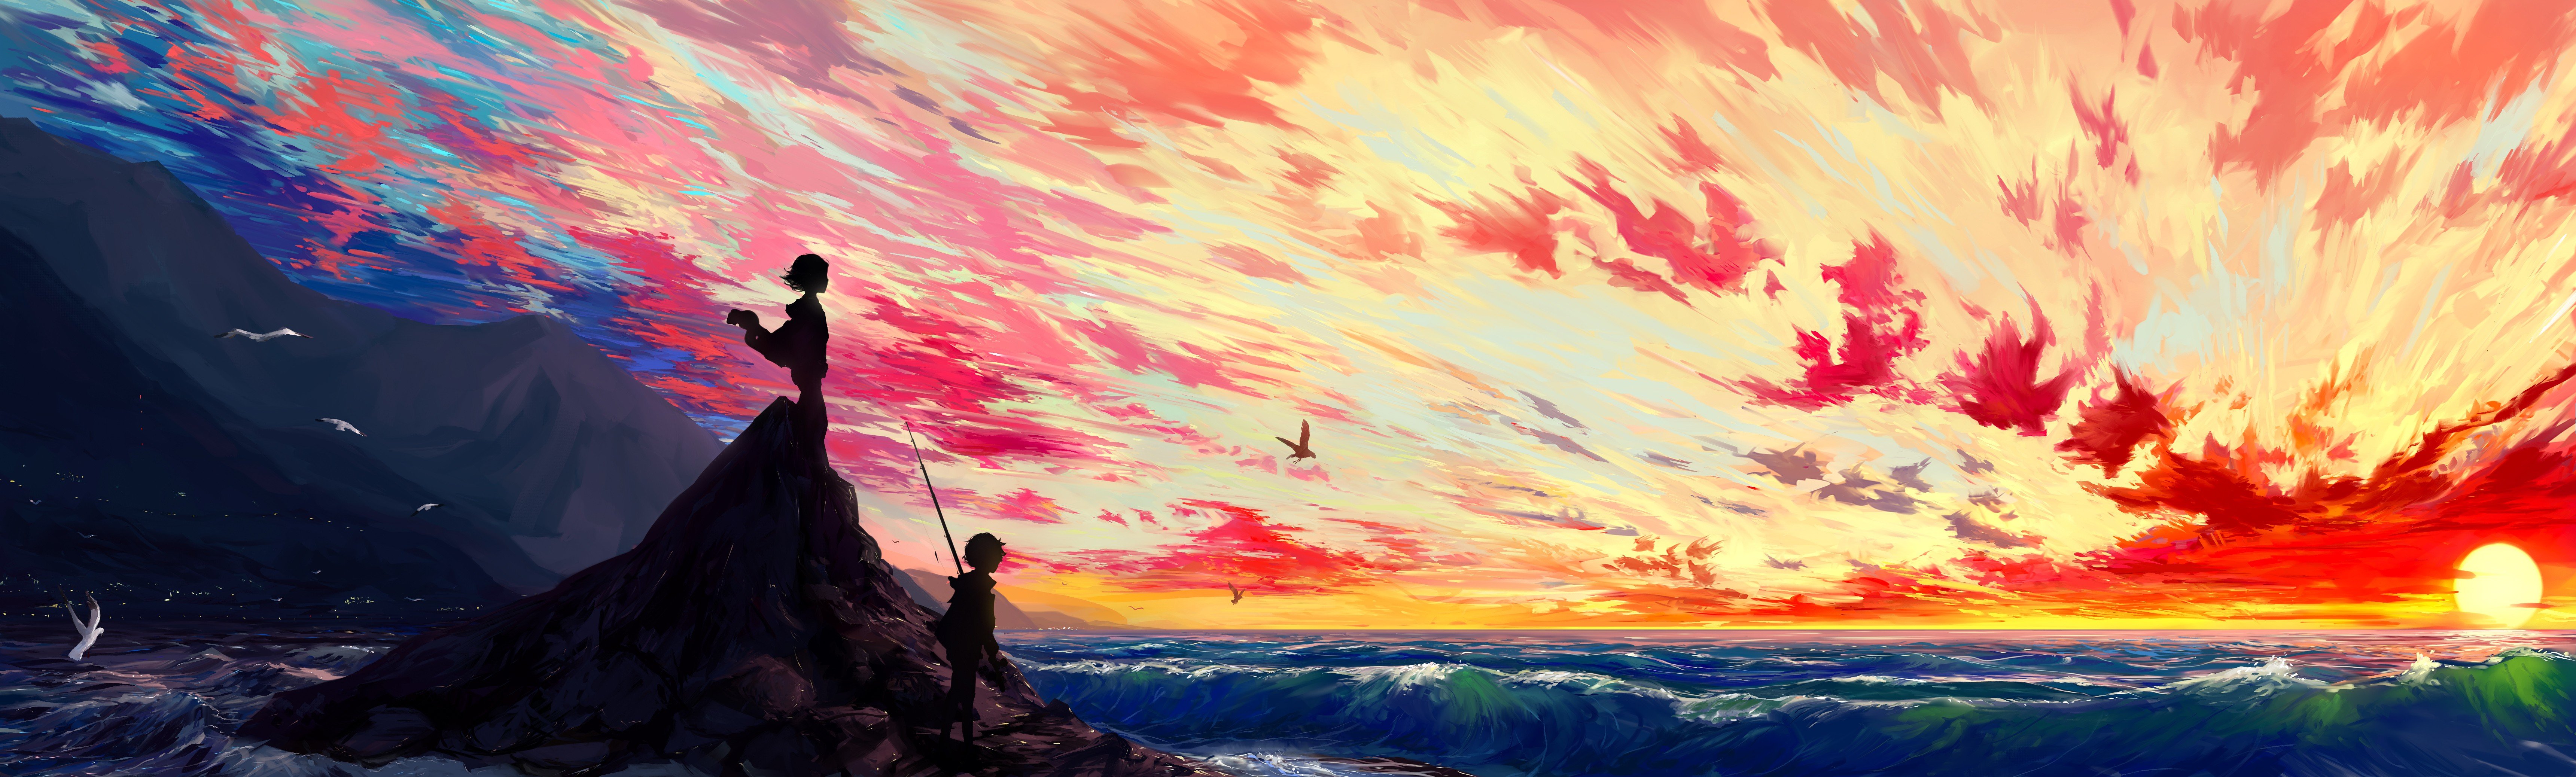 artwork, Illustration, Sunset, Sky, Fantasy art Wallpaper